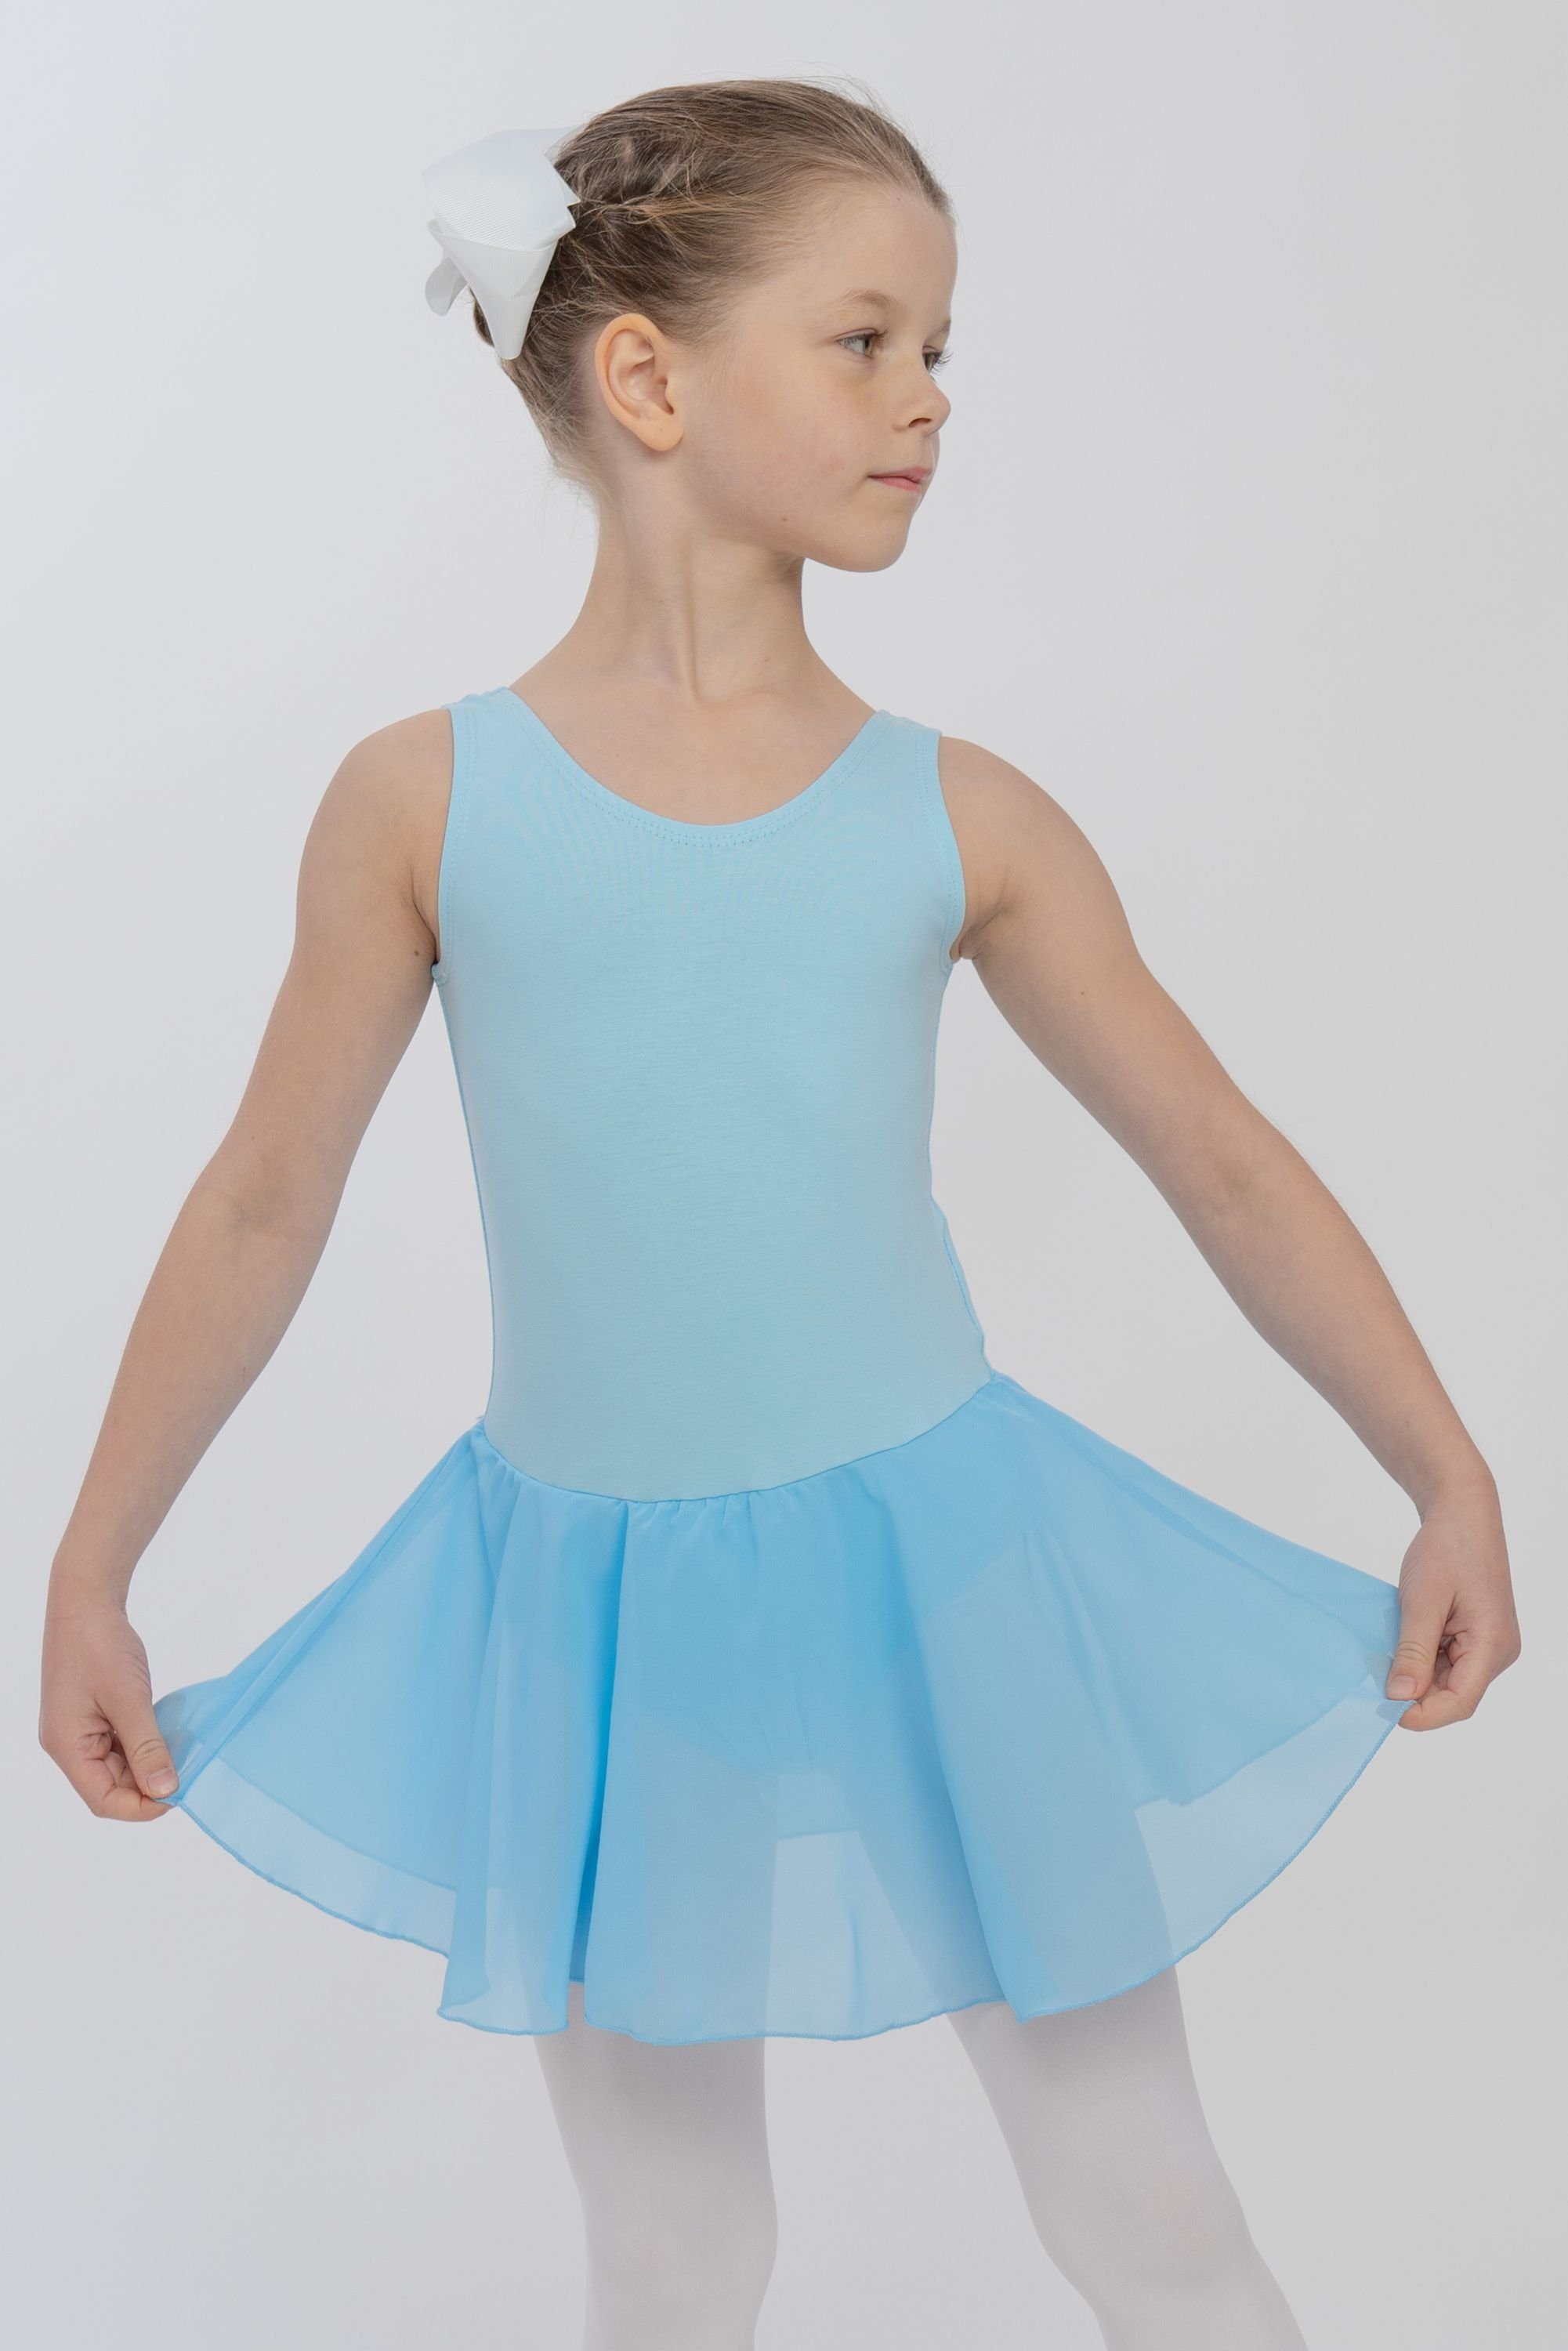 tanzmuster Chiffonkleid Ballettkleid Bella aus weicher Baumwolle Ballettbody mit Schlüssellochausschnitt für Mädchen fürs Kinder Ballett hellblau